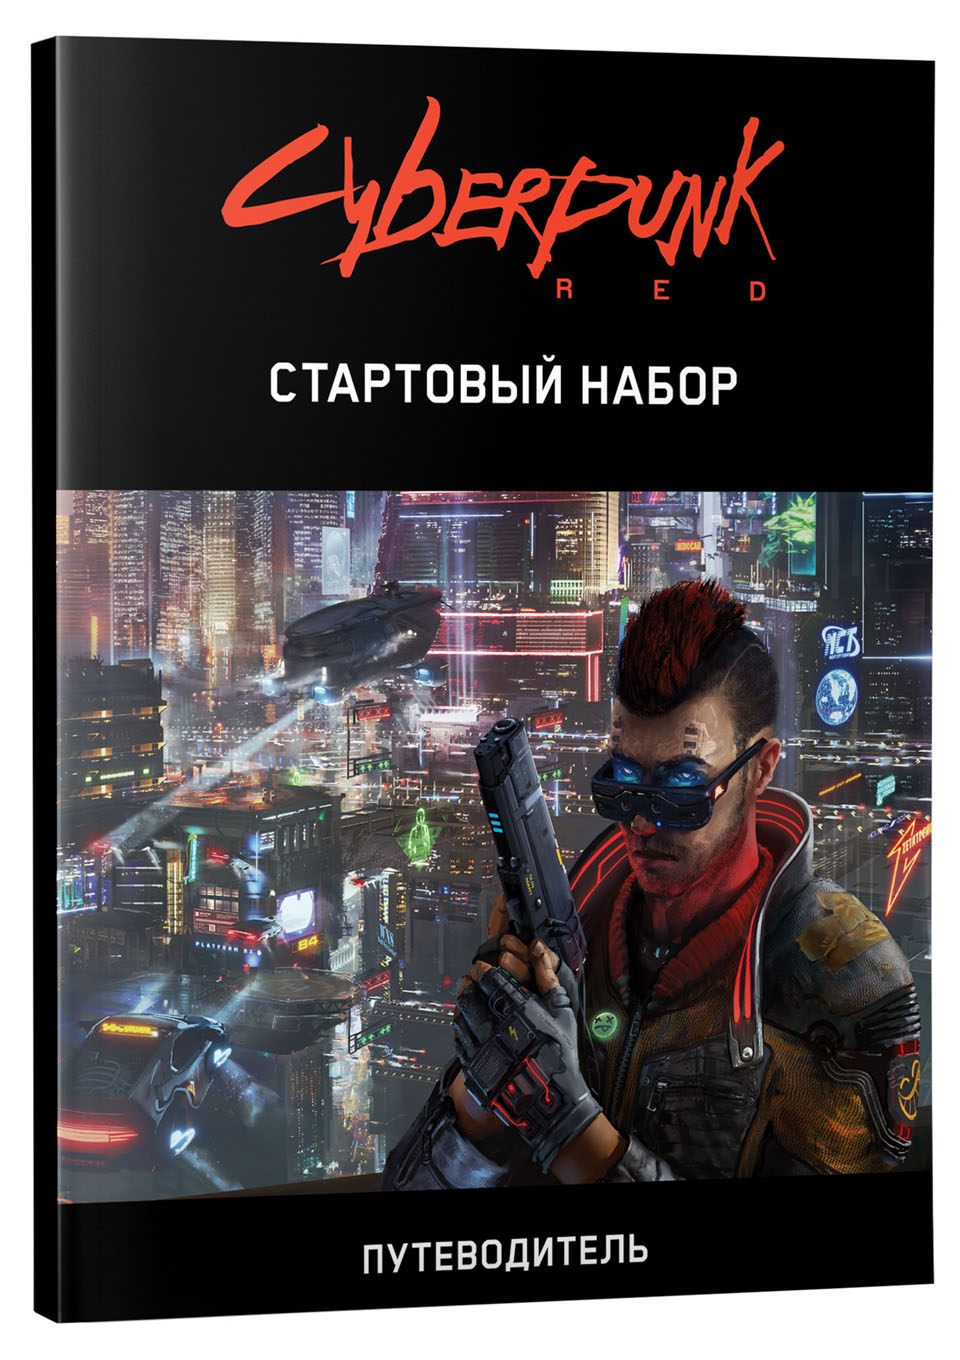 Cyberpunk red основная книга правил скачать фото 100